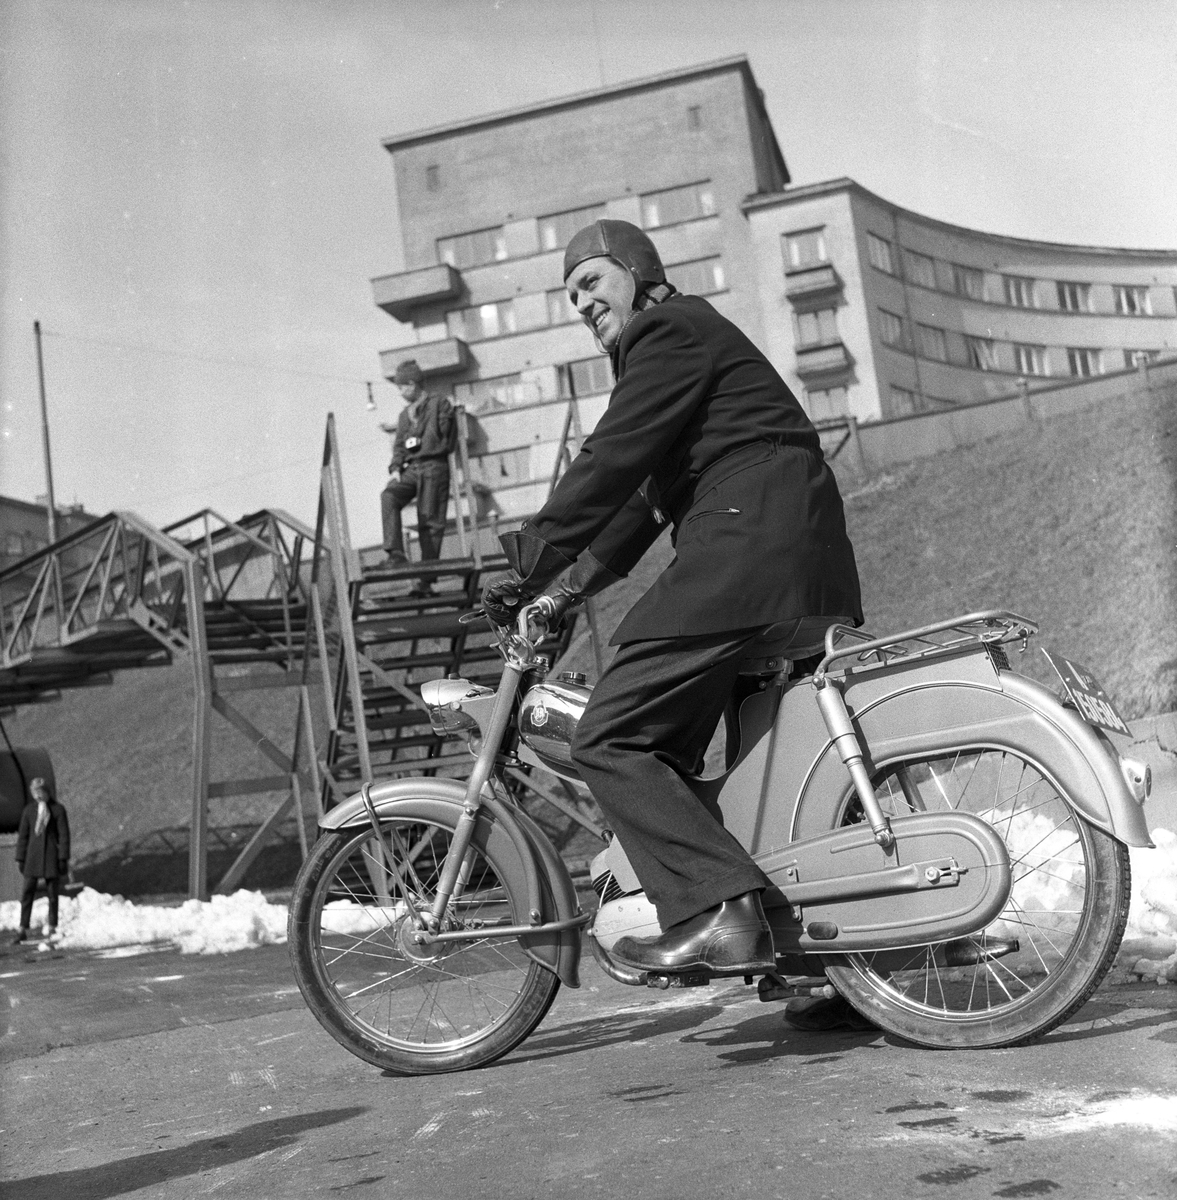 Serie. Moped-kurs. Fotografert 1959.

